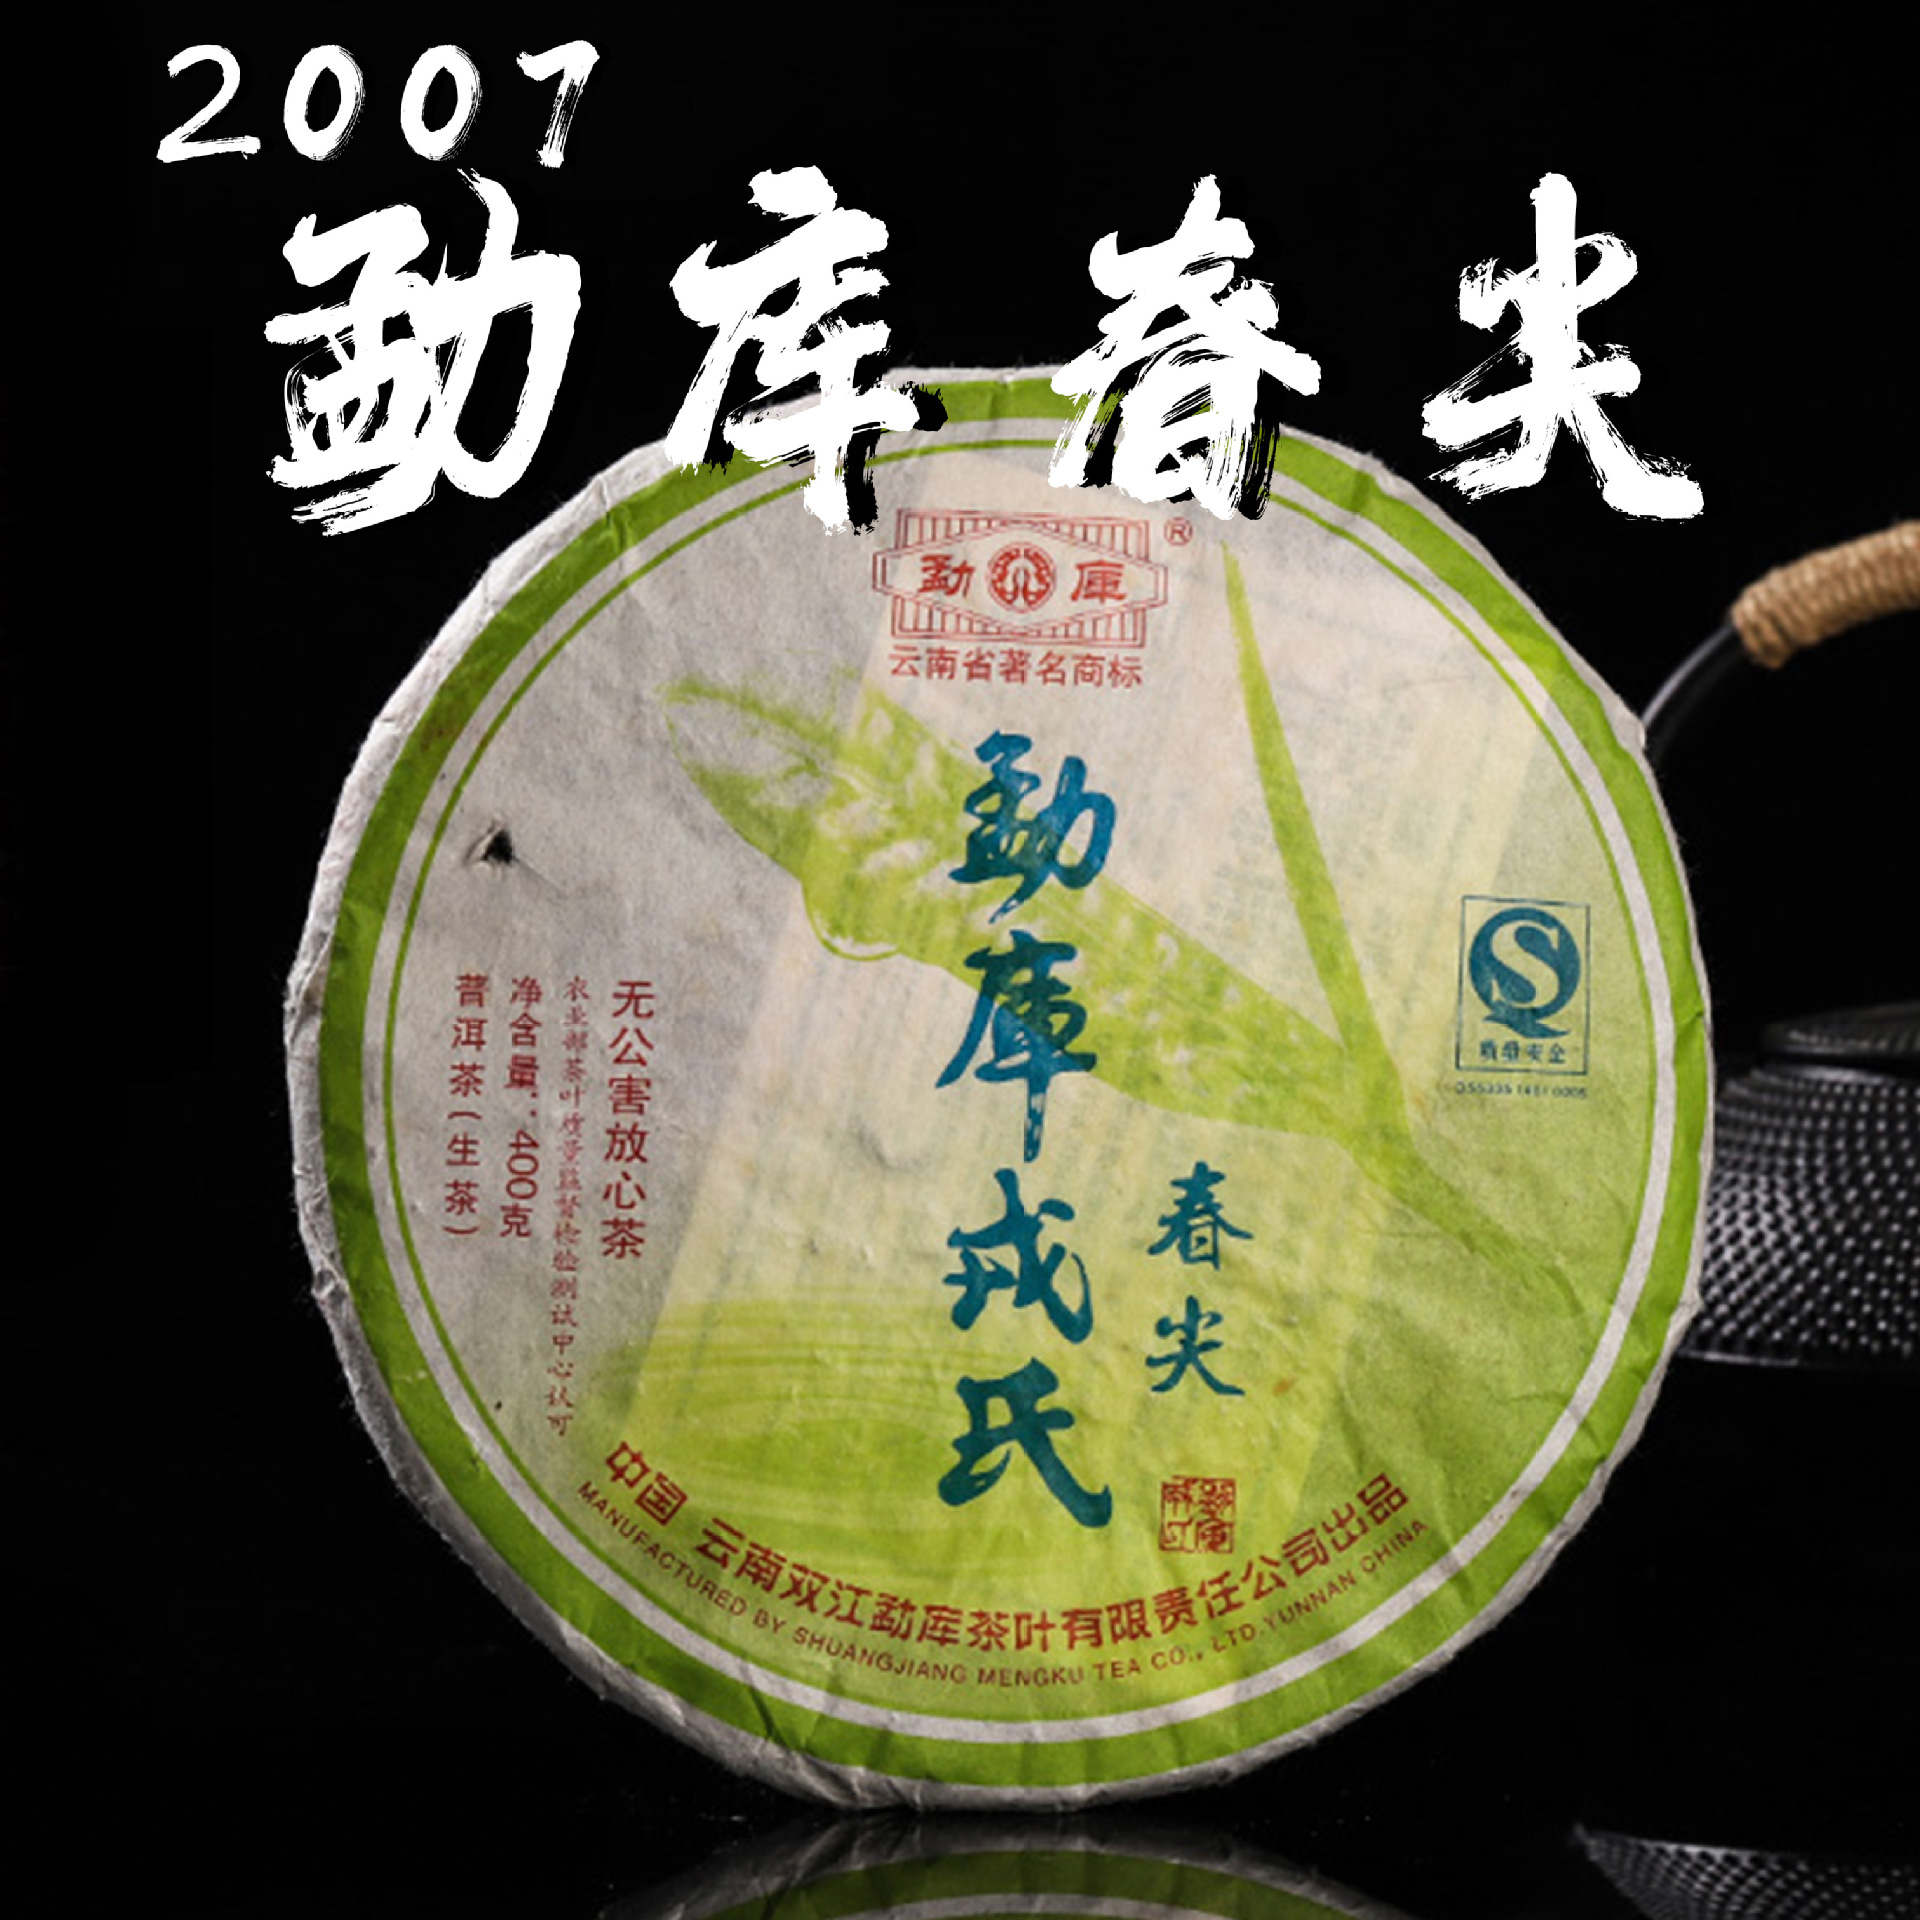 2007年勐库戎氏春尖普洱茶生茶饼400g/片干仓高香明前春茶生茶